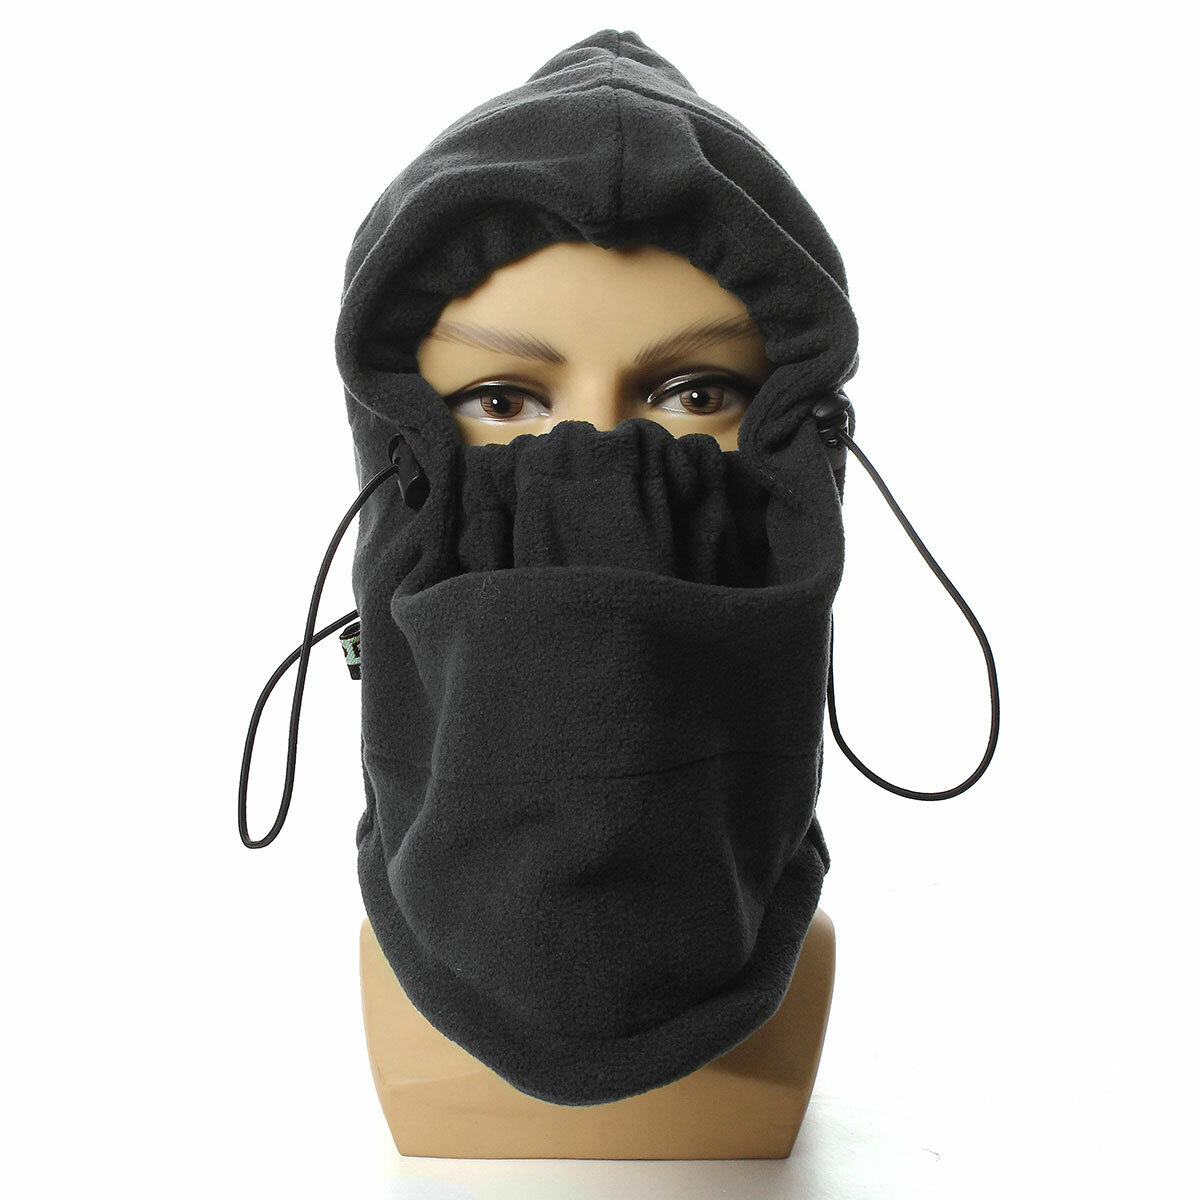 Bonnet balaclava d'hiver chaud, couvre-cou, couvre-visage complet, masque de ski, écharpe, capuche, pour la randonnée et le cyclisme en plein air.